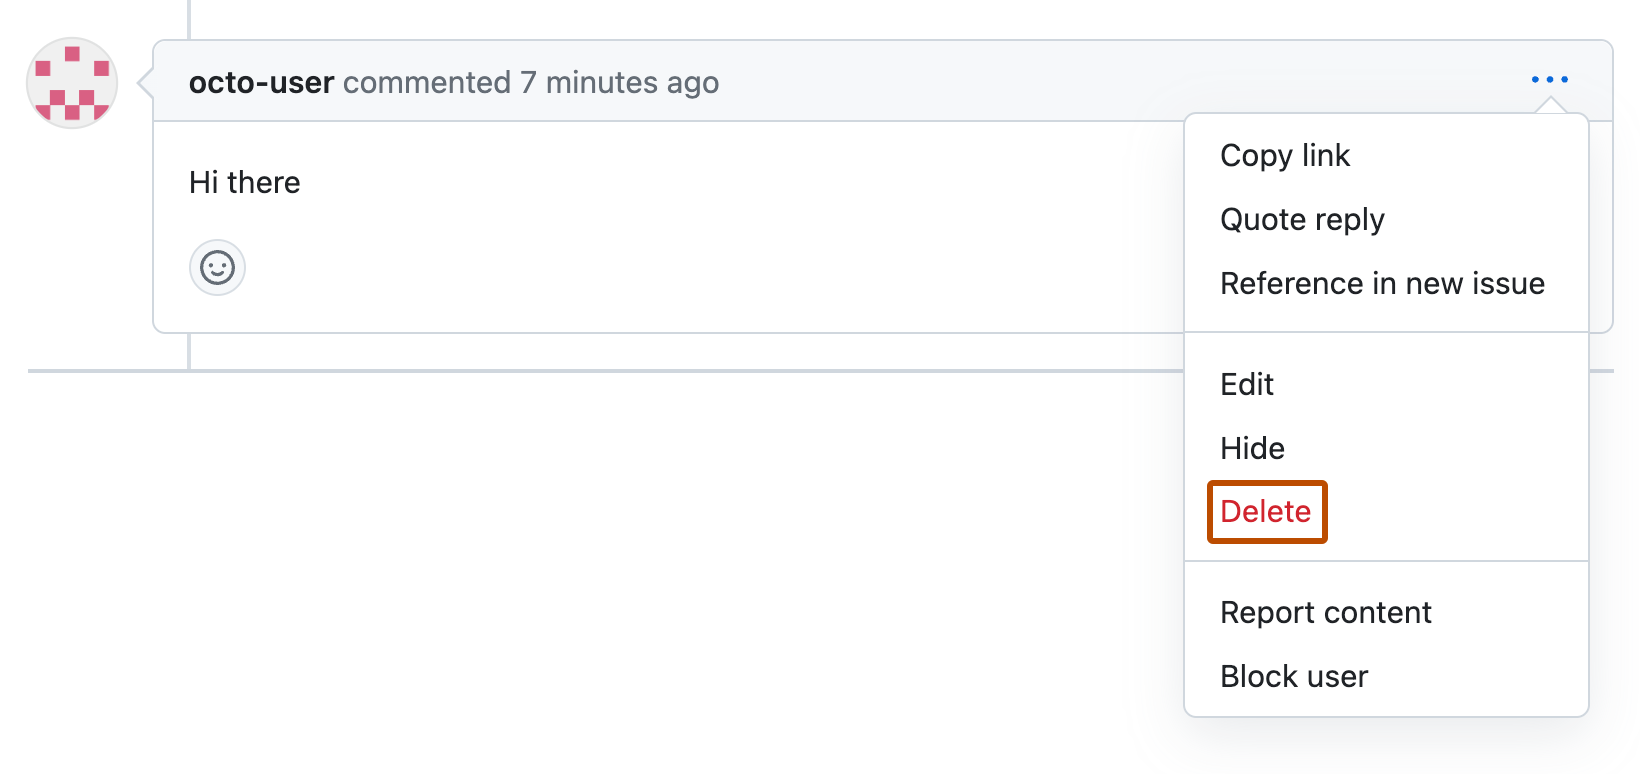 Снимок экрана: комментарий к запросу на вытягивание от octo-user. Под значком с тремя горизонтальными точками развернуто раскрывающееся меню, а "Удалить" выделено оранжевым цветом.